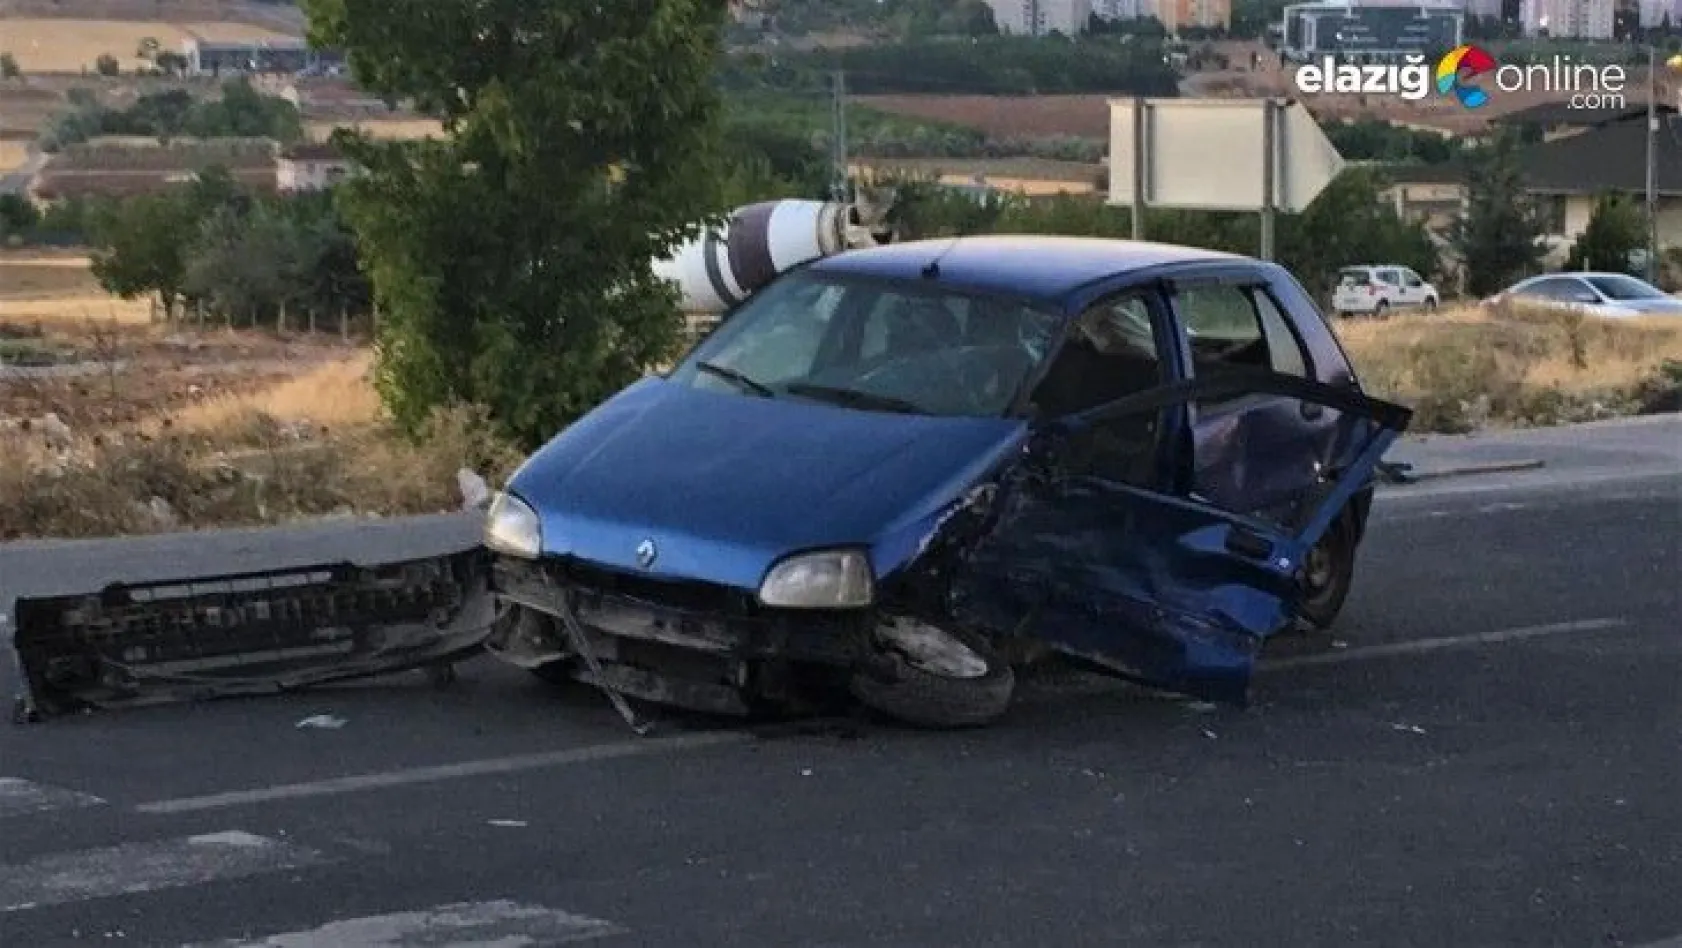 Elazığ'da geçen ay meydana gelen trafik kazalarında 4 kişi hayatını kaybetti